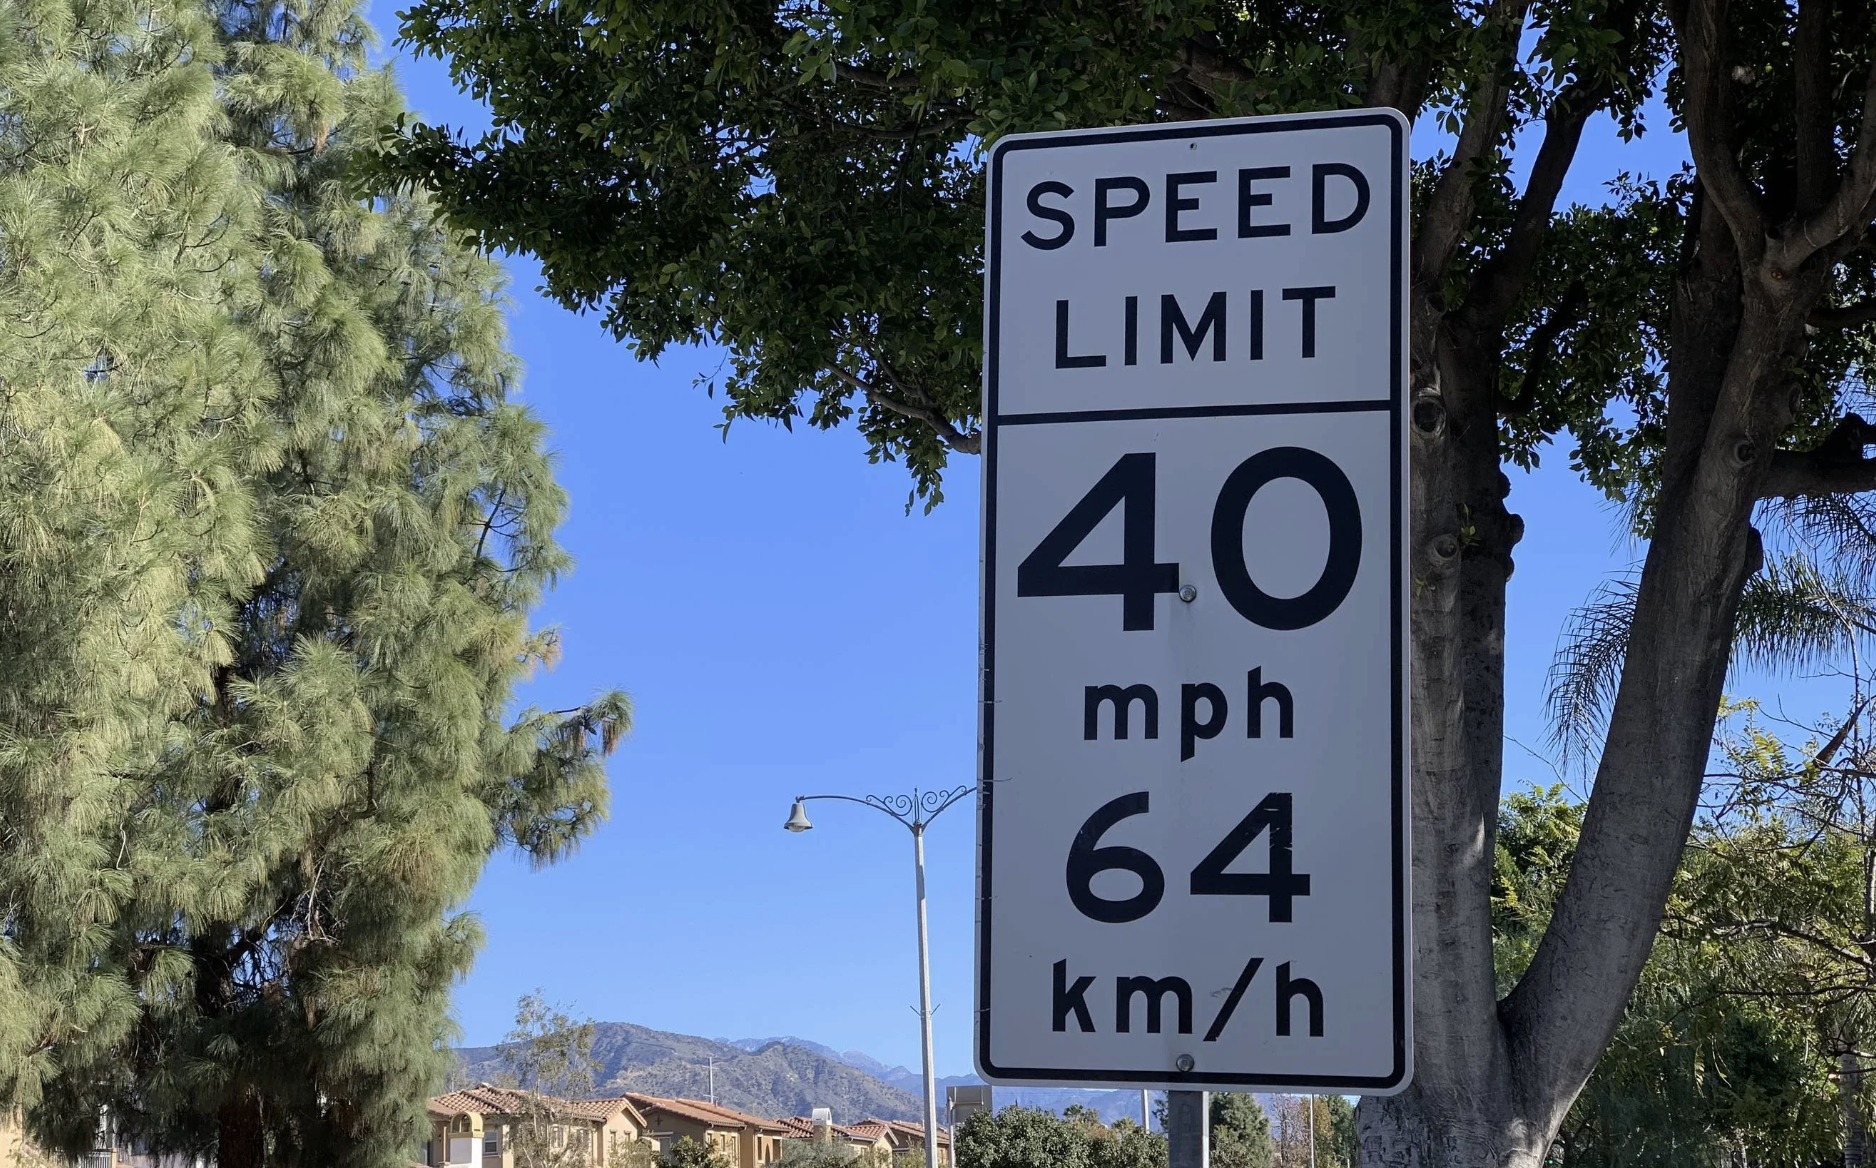 Bảng giới hạn tốc độ tại tiểu bang California bao gồm cả 2 đơn vị dặm trên giờ và km trên giờ. Ảnh: d416/Reddit